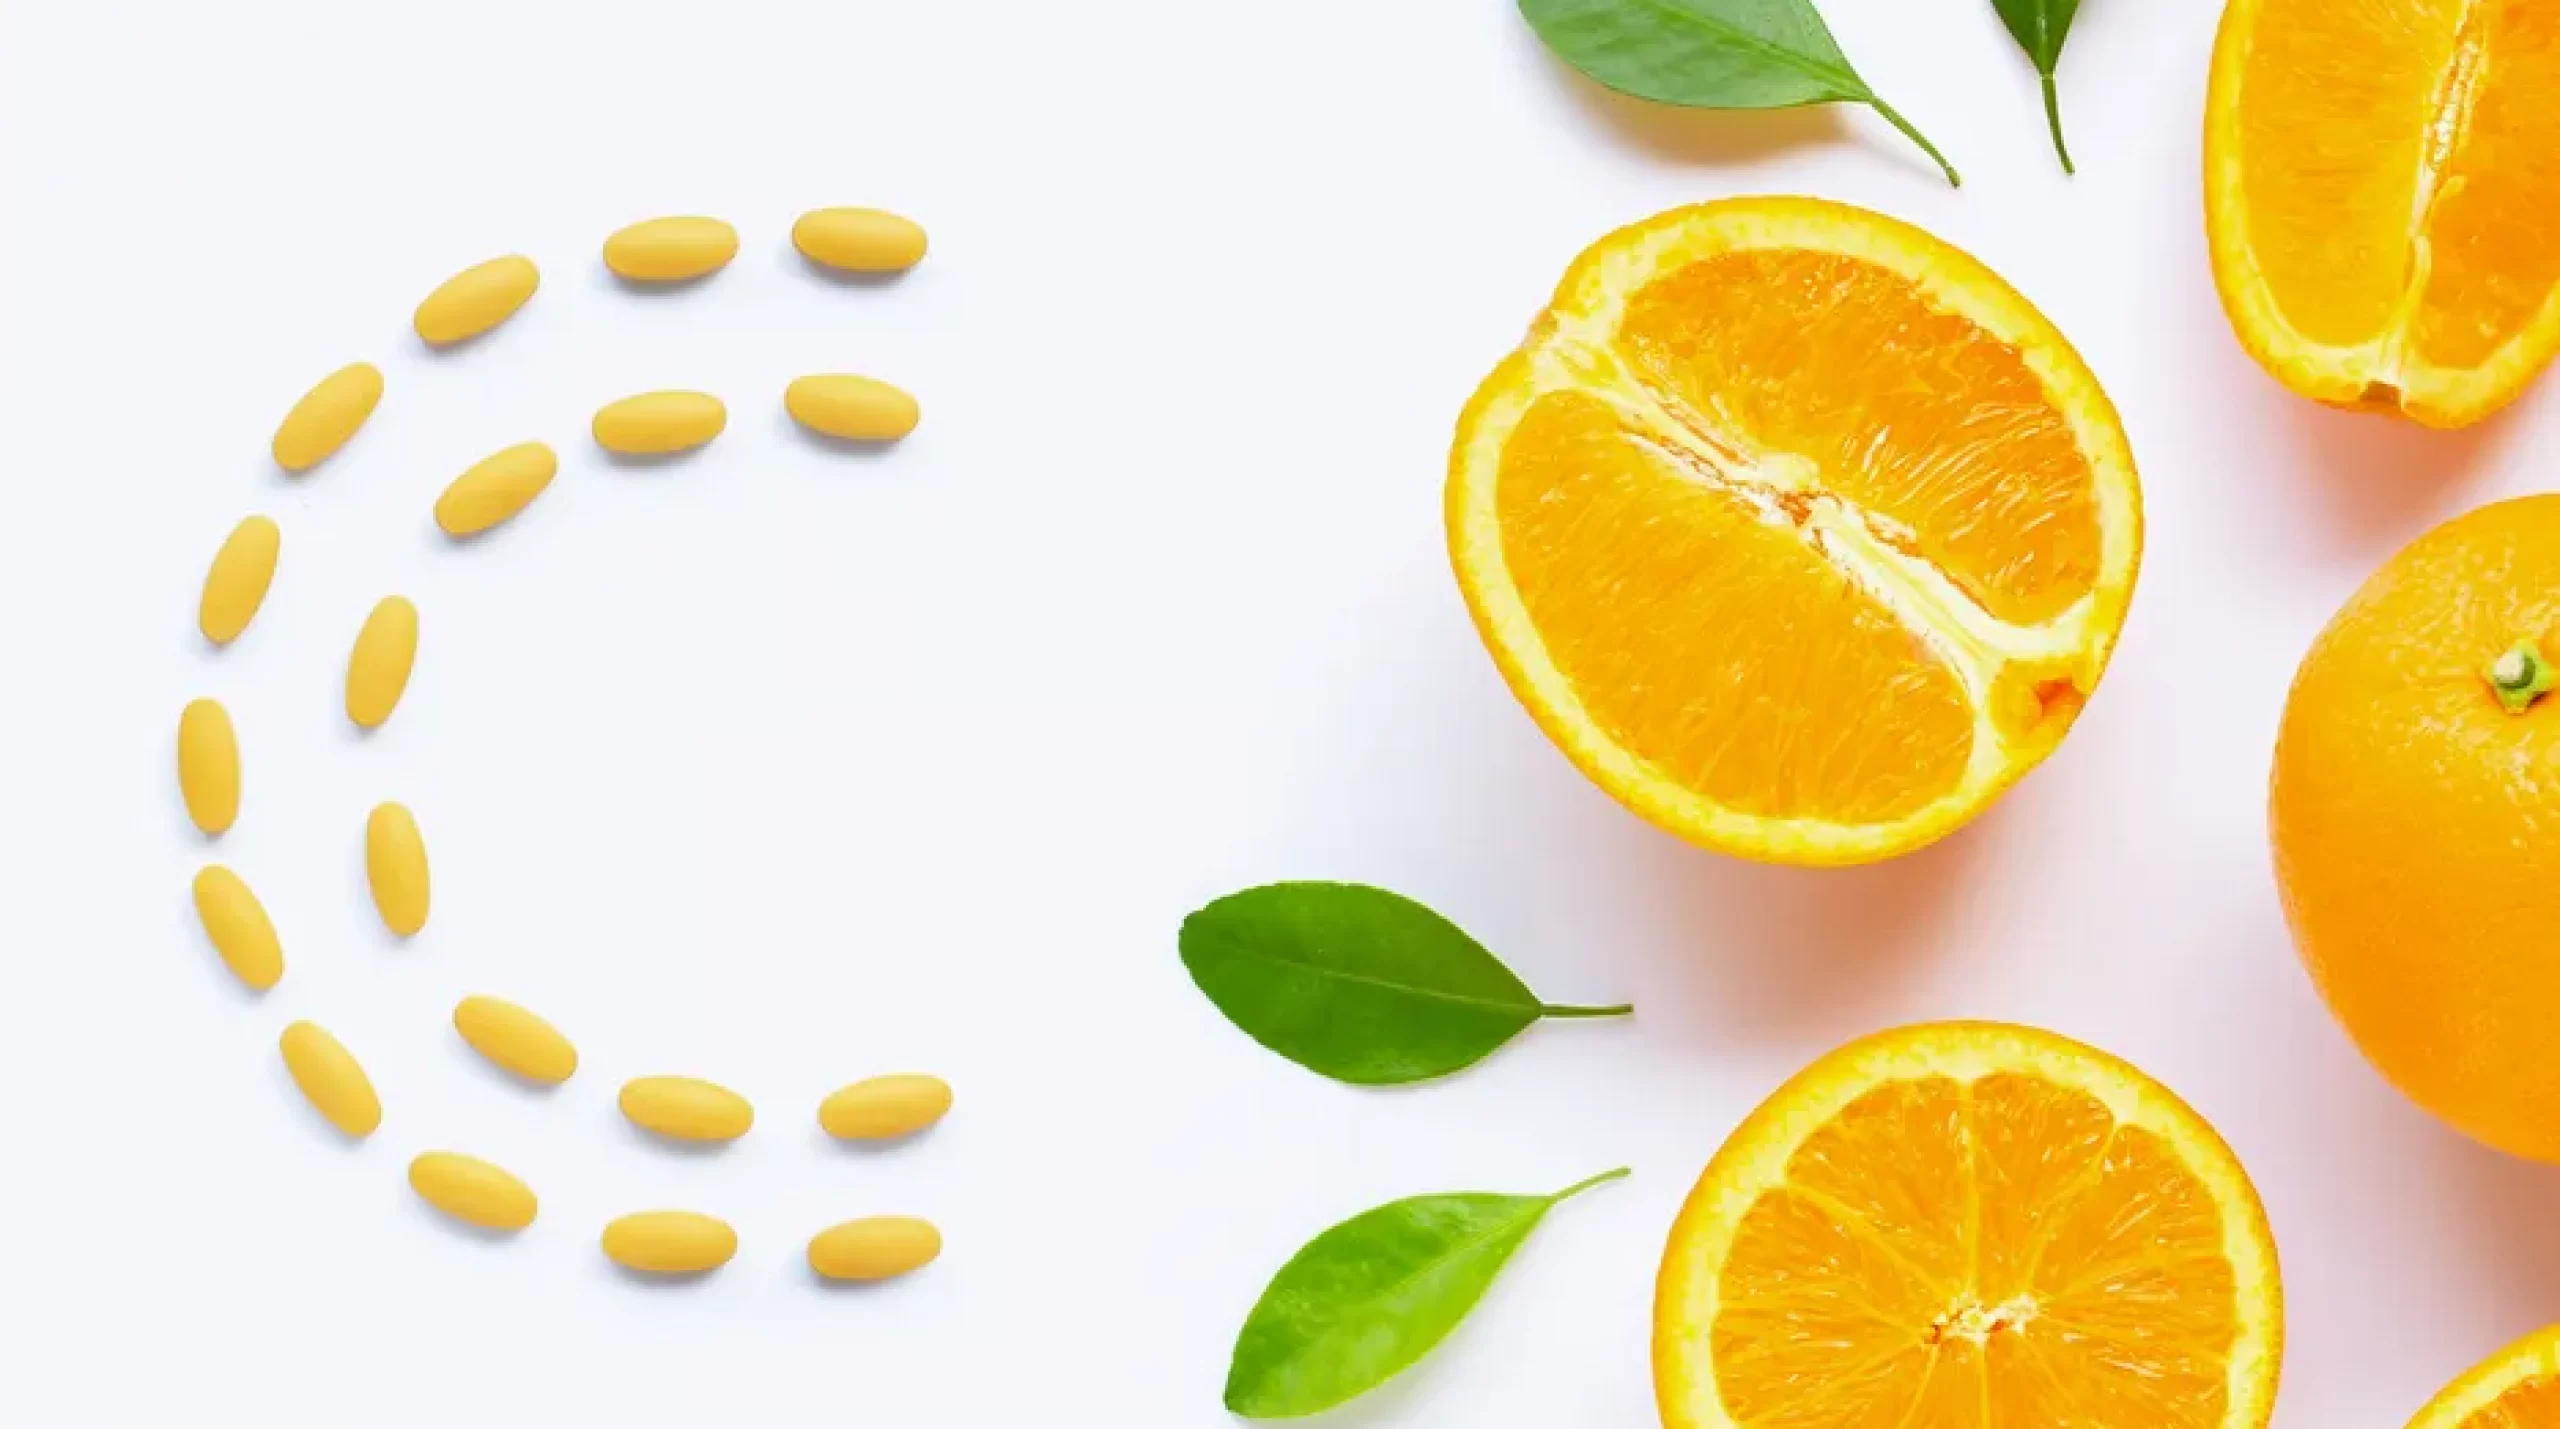 vitamin-c-pills-with-fresh-orange-citrus-fruit-isolated